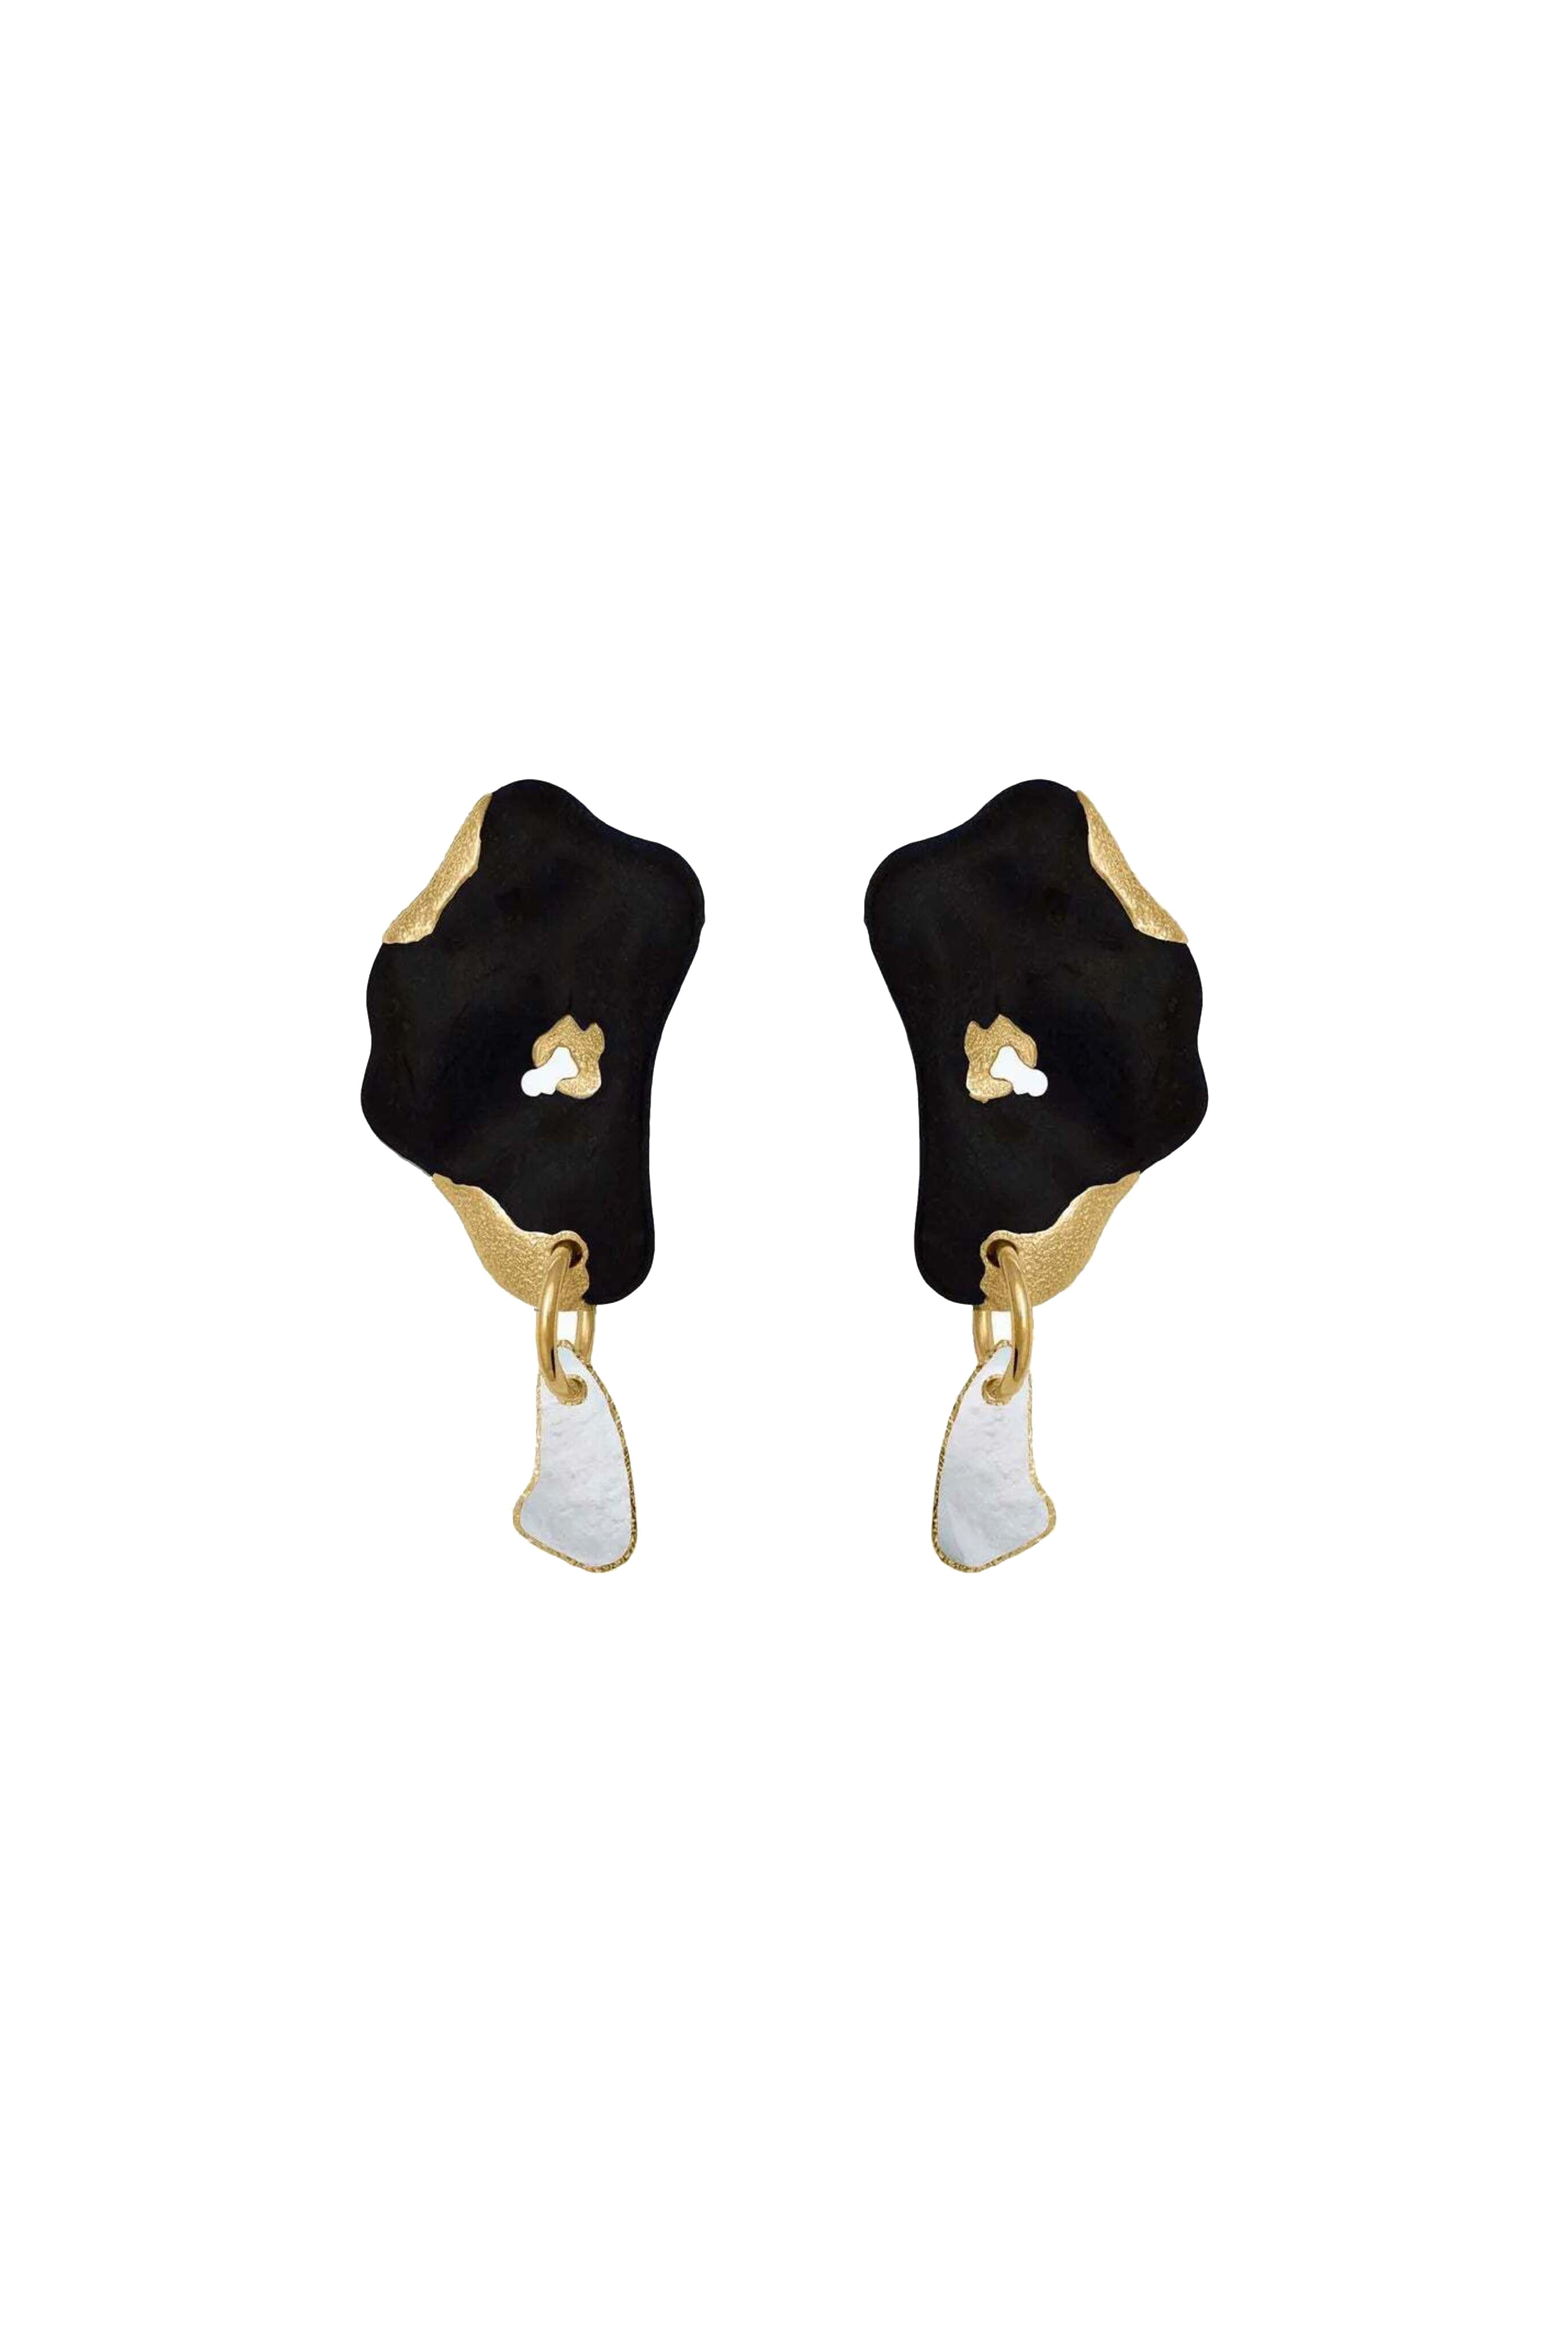 SORDO Laberinto Earrings in Black